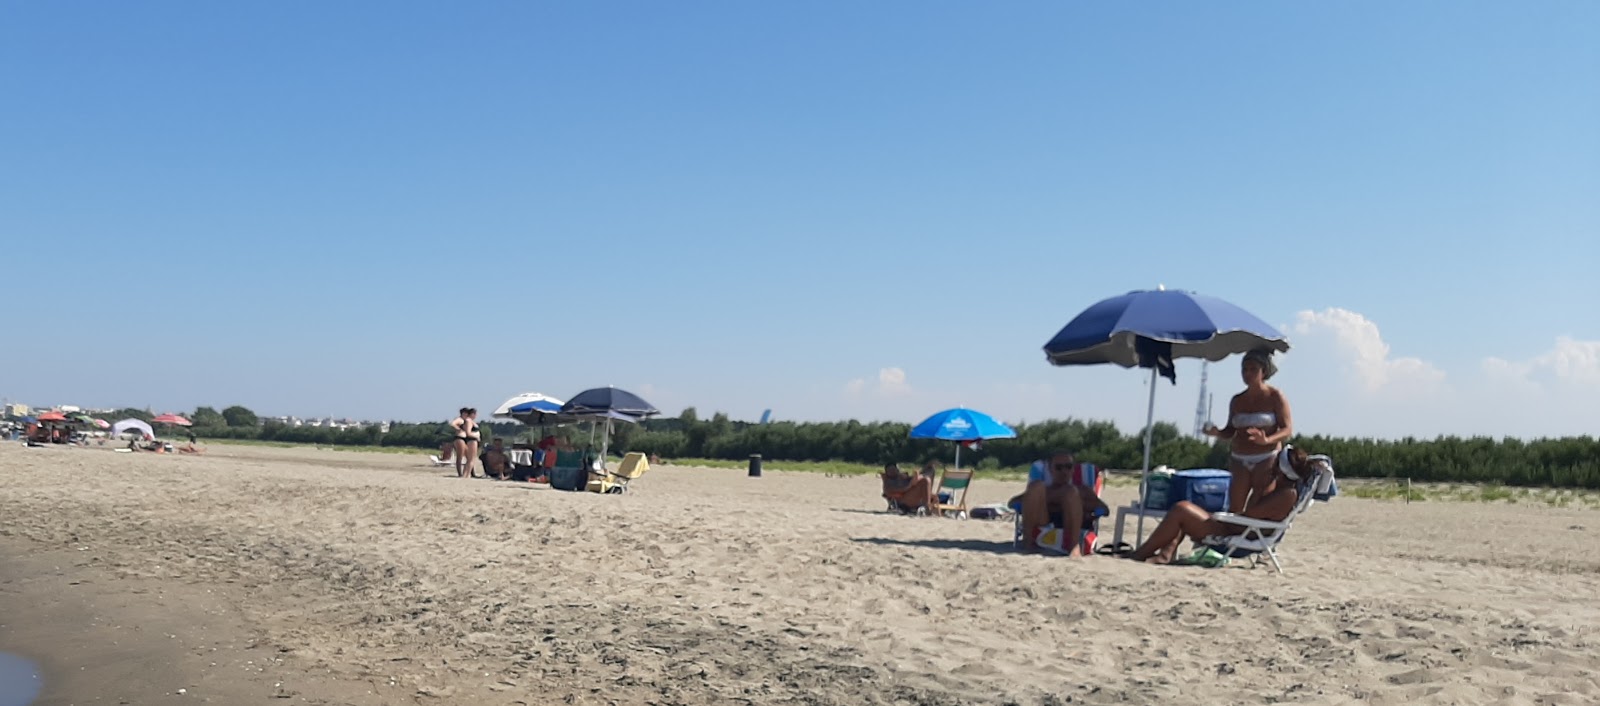 Spiaggia di Barletta'in fotoğrafı kahverengi kum yüzey ile